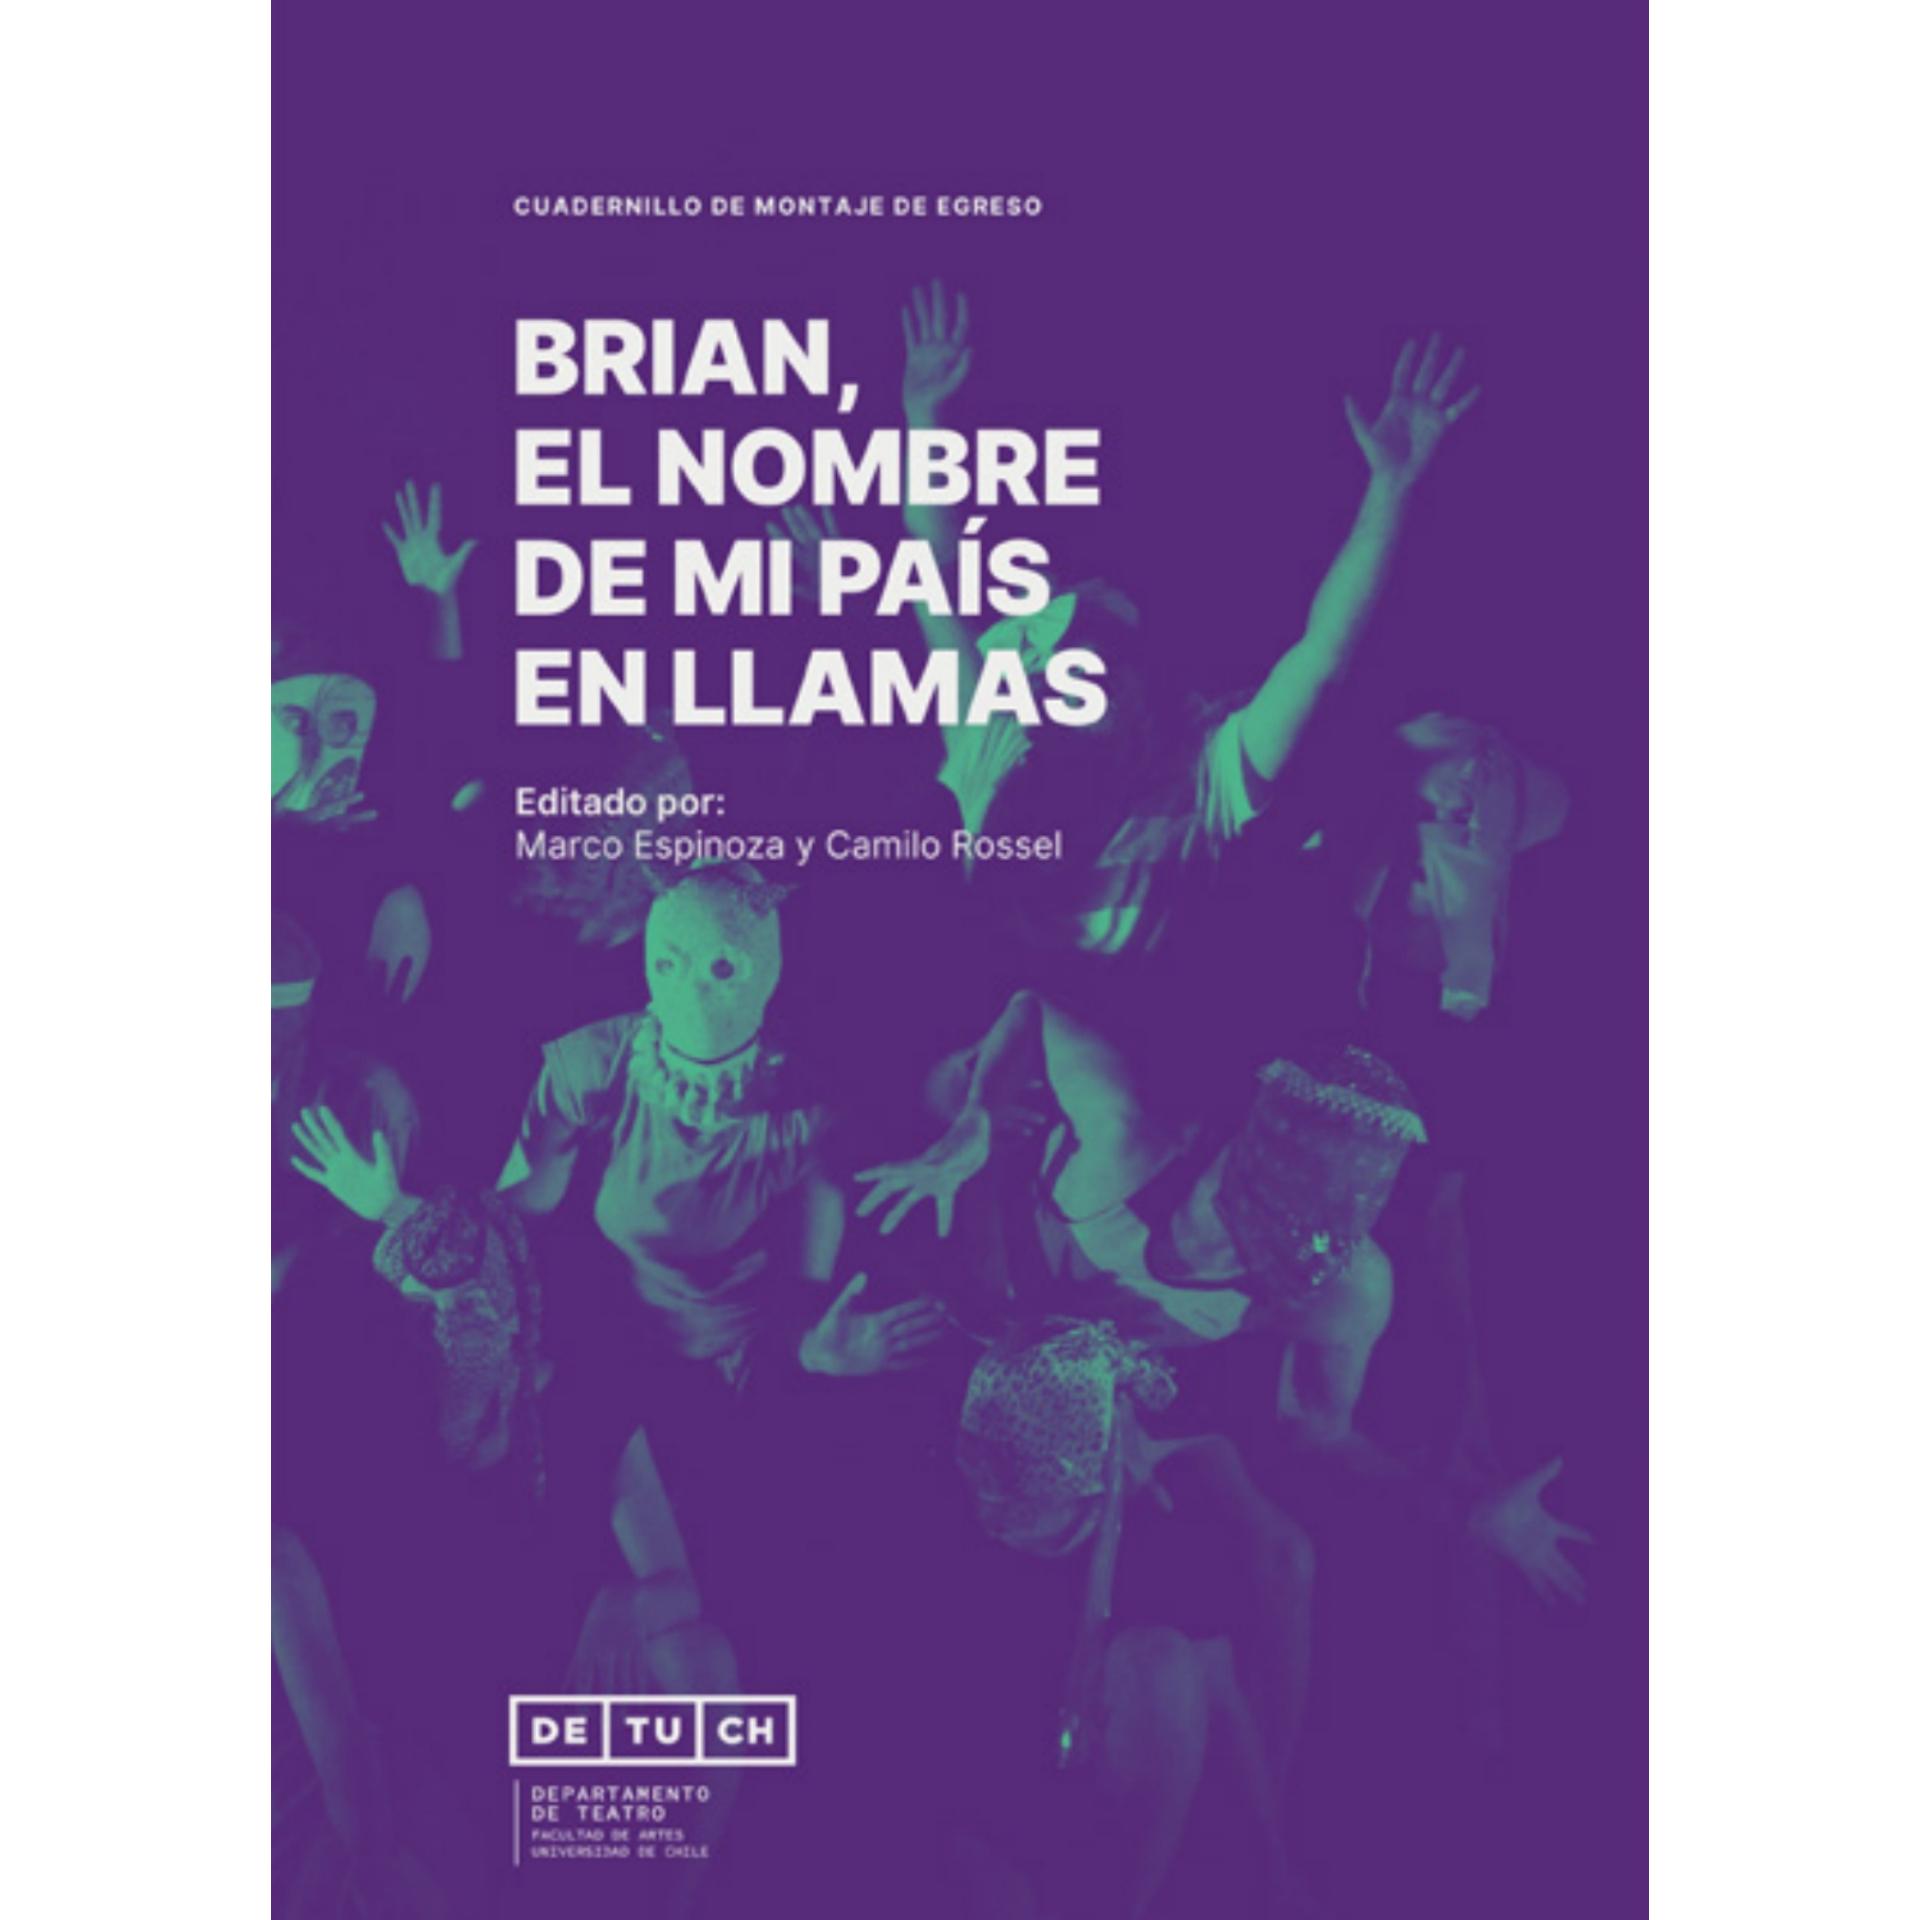 Libro: "Cuadernillo de montaje de egreso: Brian, el nombre de mi país en llamas"